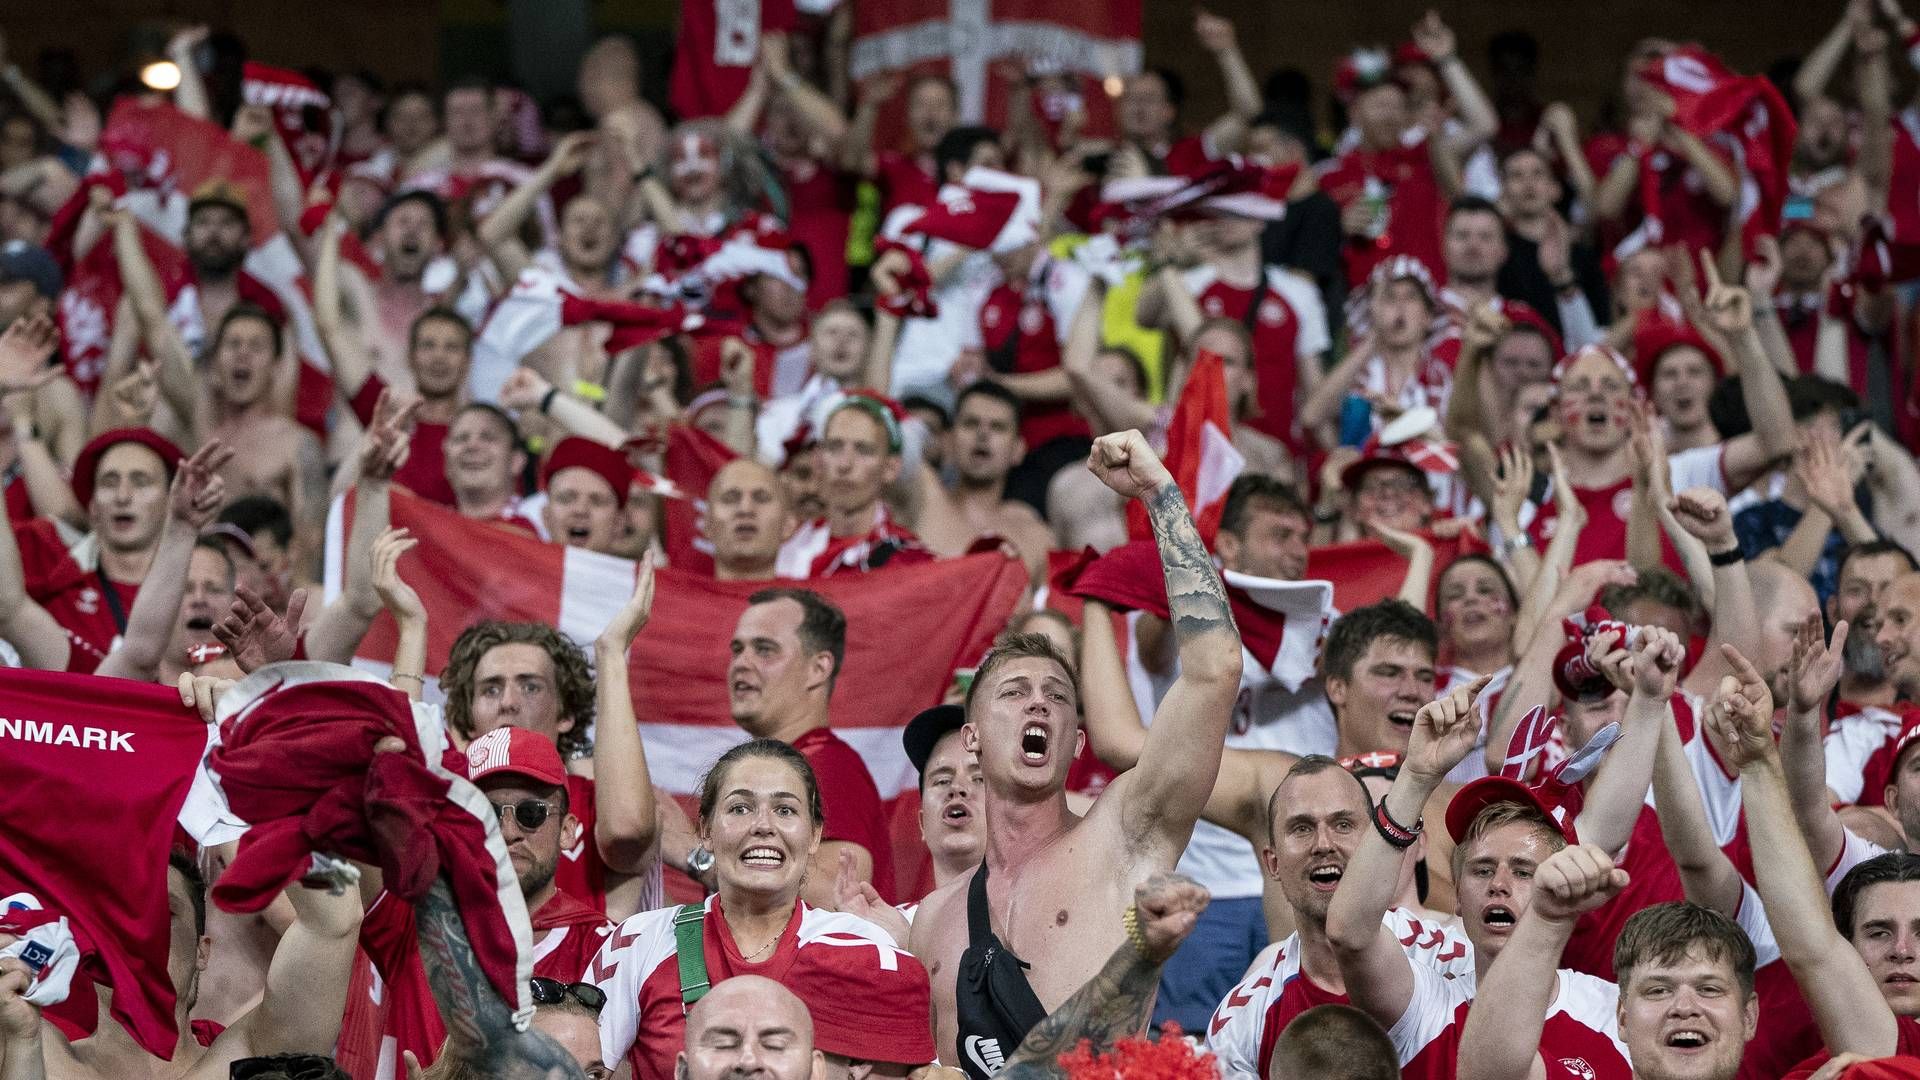 Knap 8000 danskere har købt billet til EM-semifinalen mellem Danmark og England onsdag aften. (Arkivfoto) | Foto: LISELOTTE SABROE